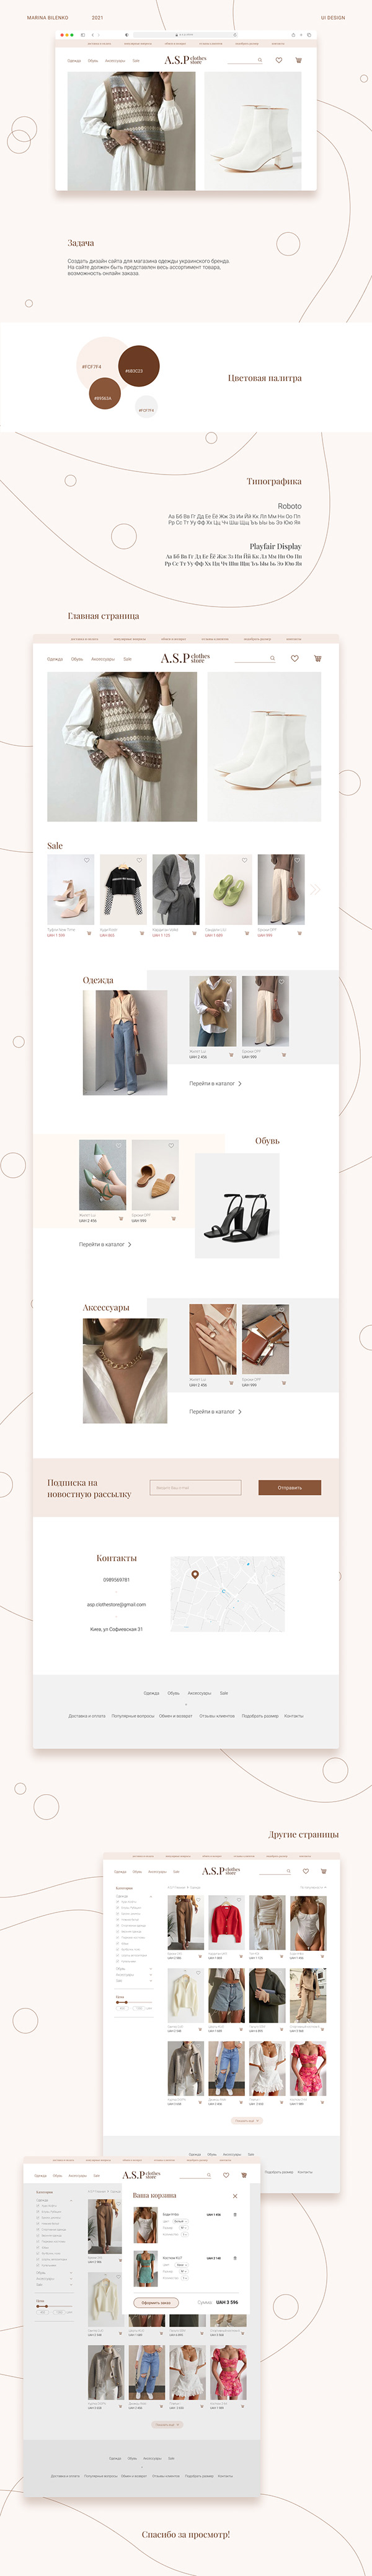 Дизайн сайта для магазина одежды|Clothes store website